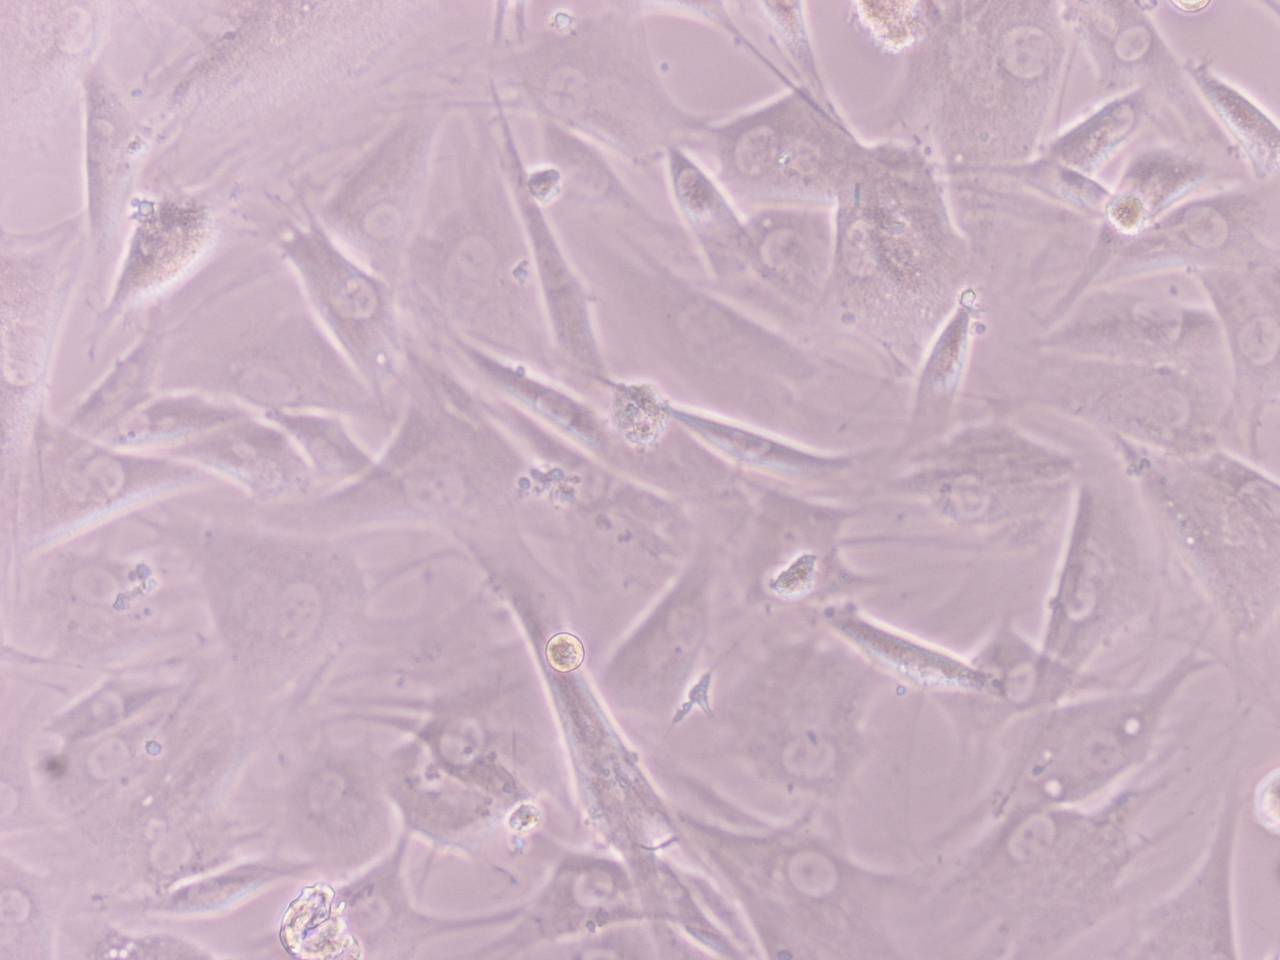 Suspenden el primer ensayo autorizado con células madres embrionariasensayo 